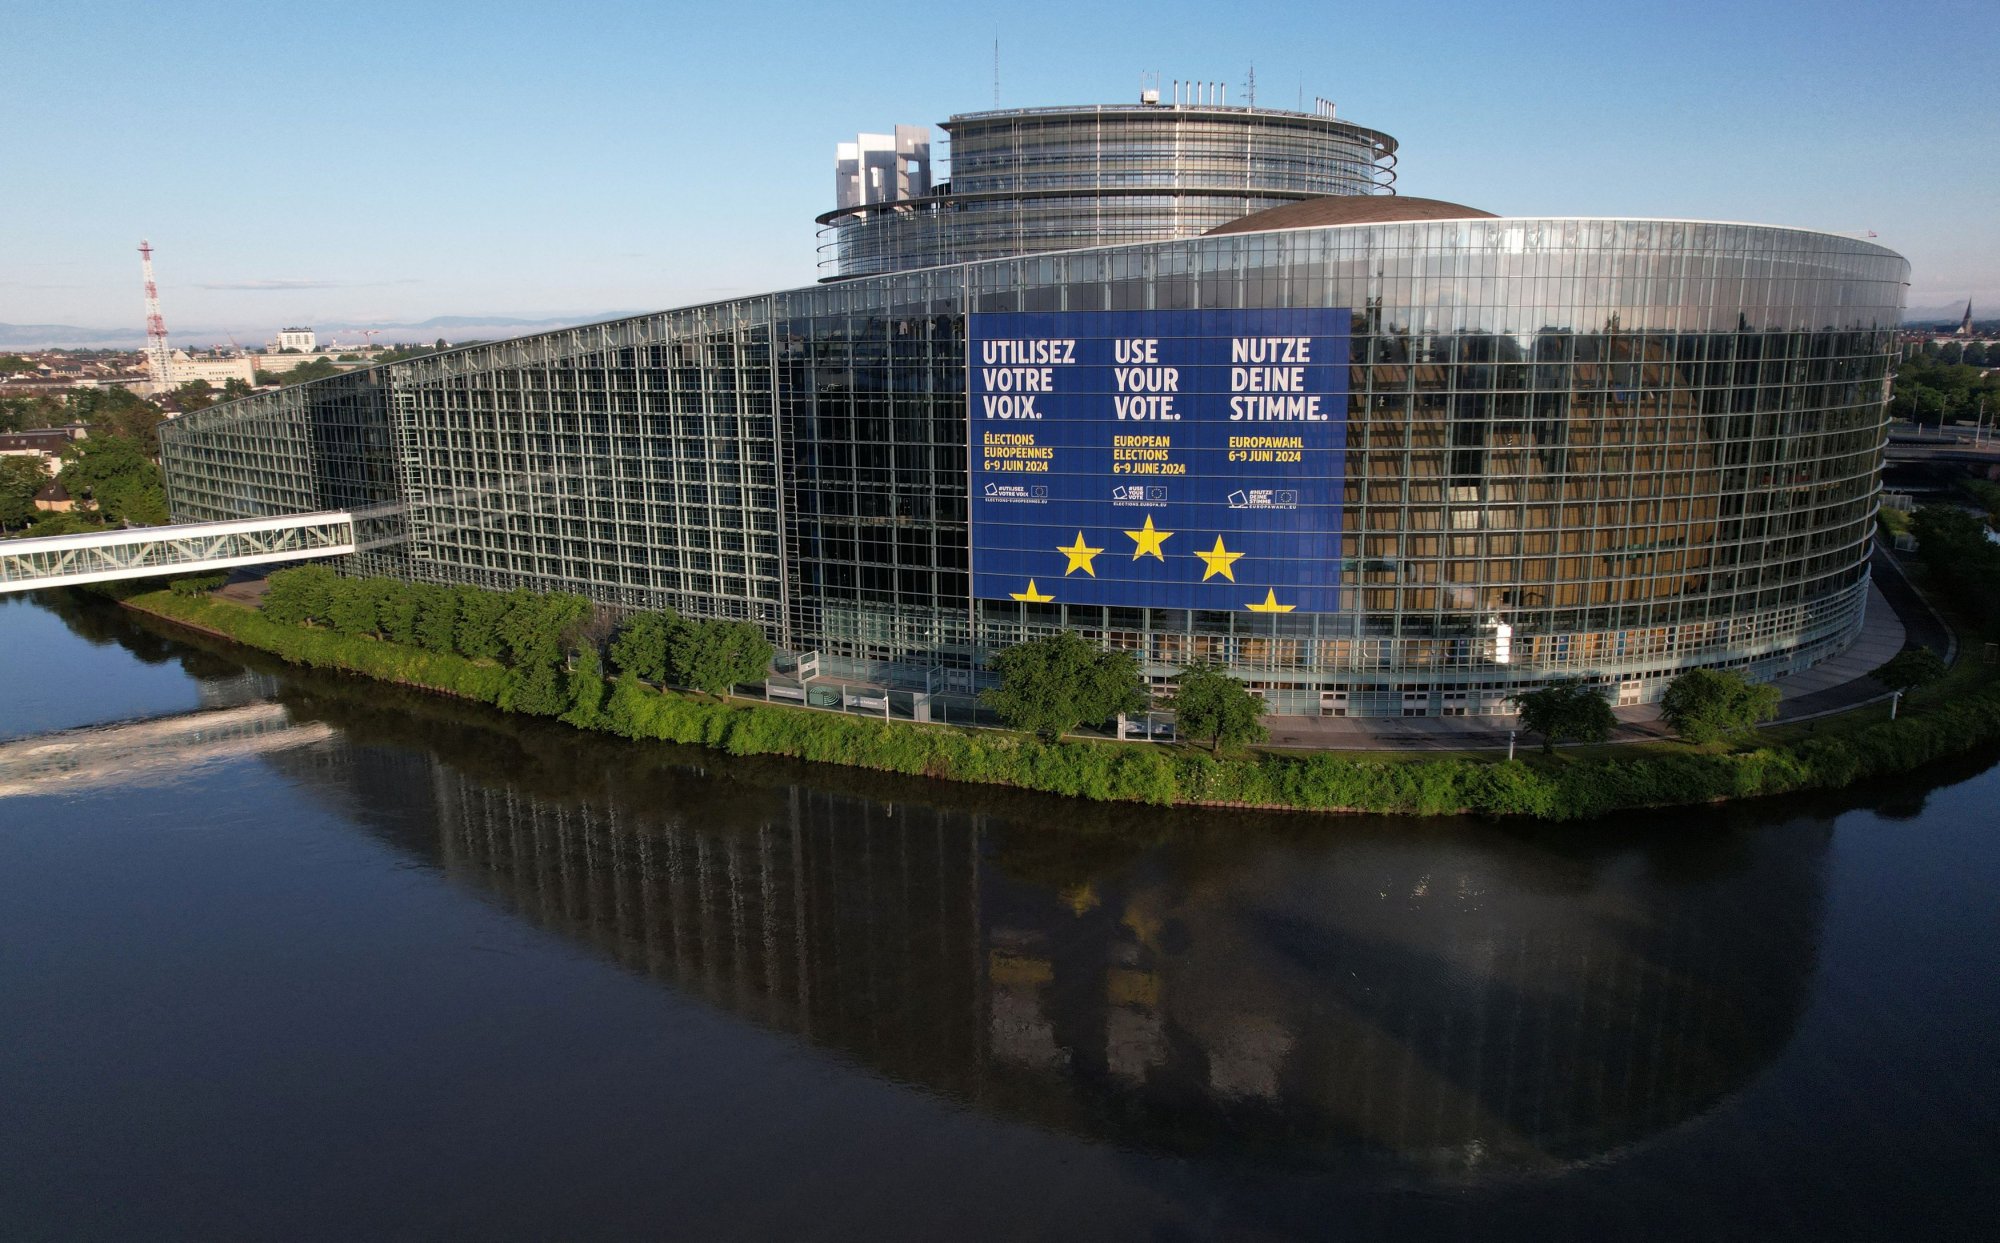 Στην τελική ευθεία για την ευρωκάλπη – Πολιτικοί συσχετισμοί και «παζάρια» για την επόμενη μέρα